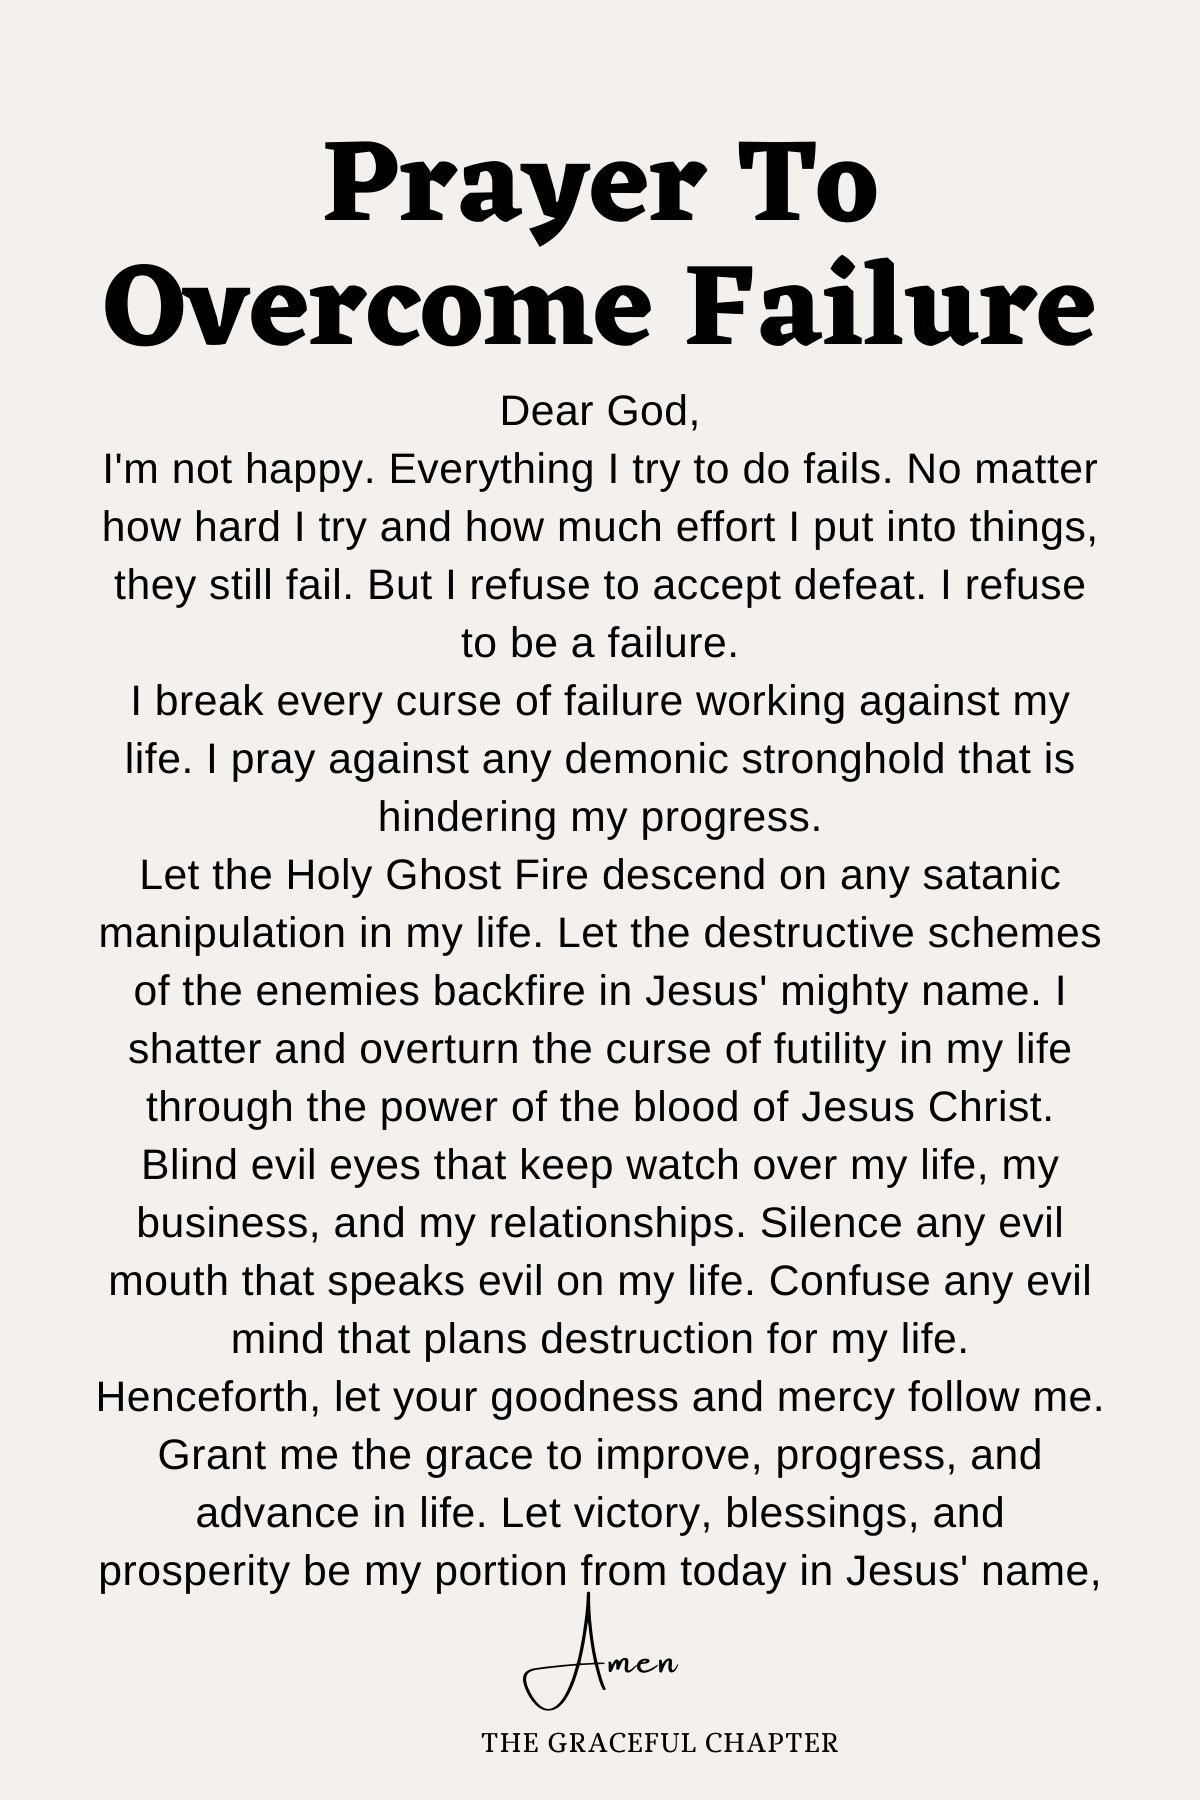 Prayer to overcome failure